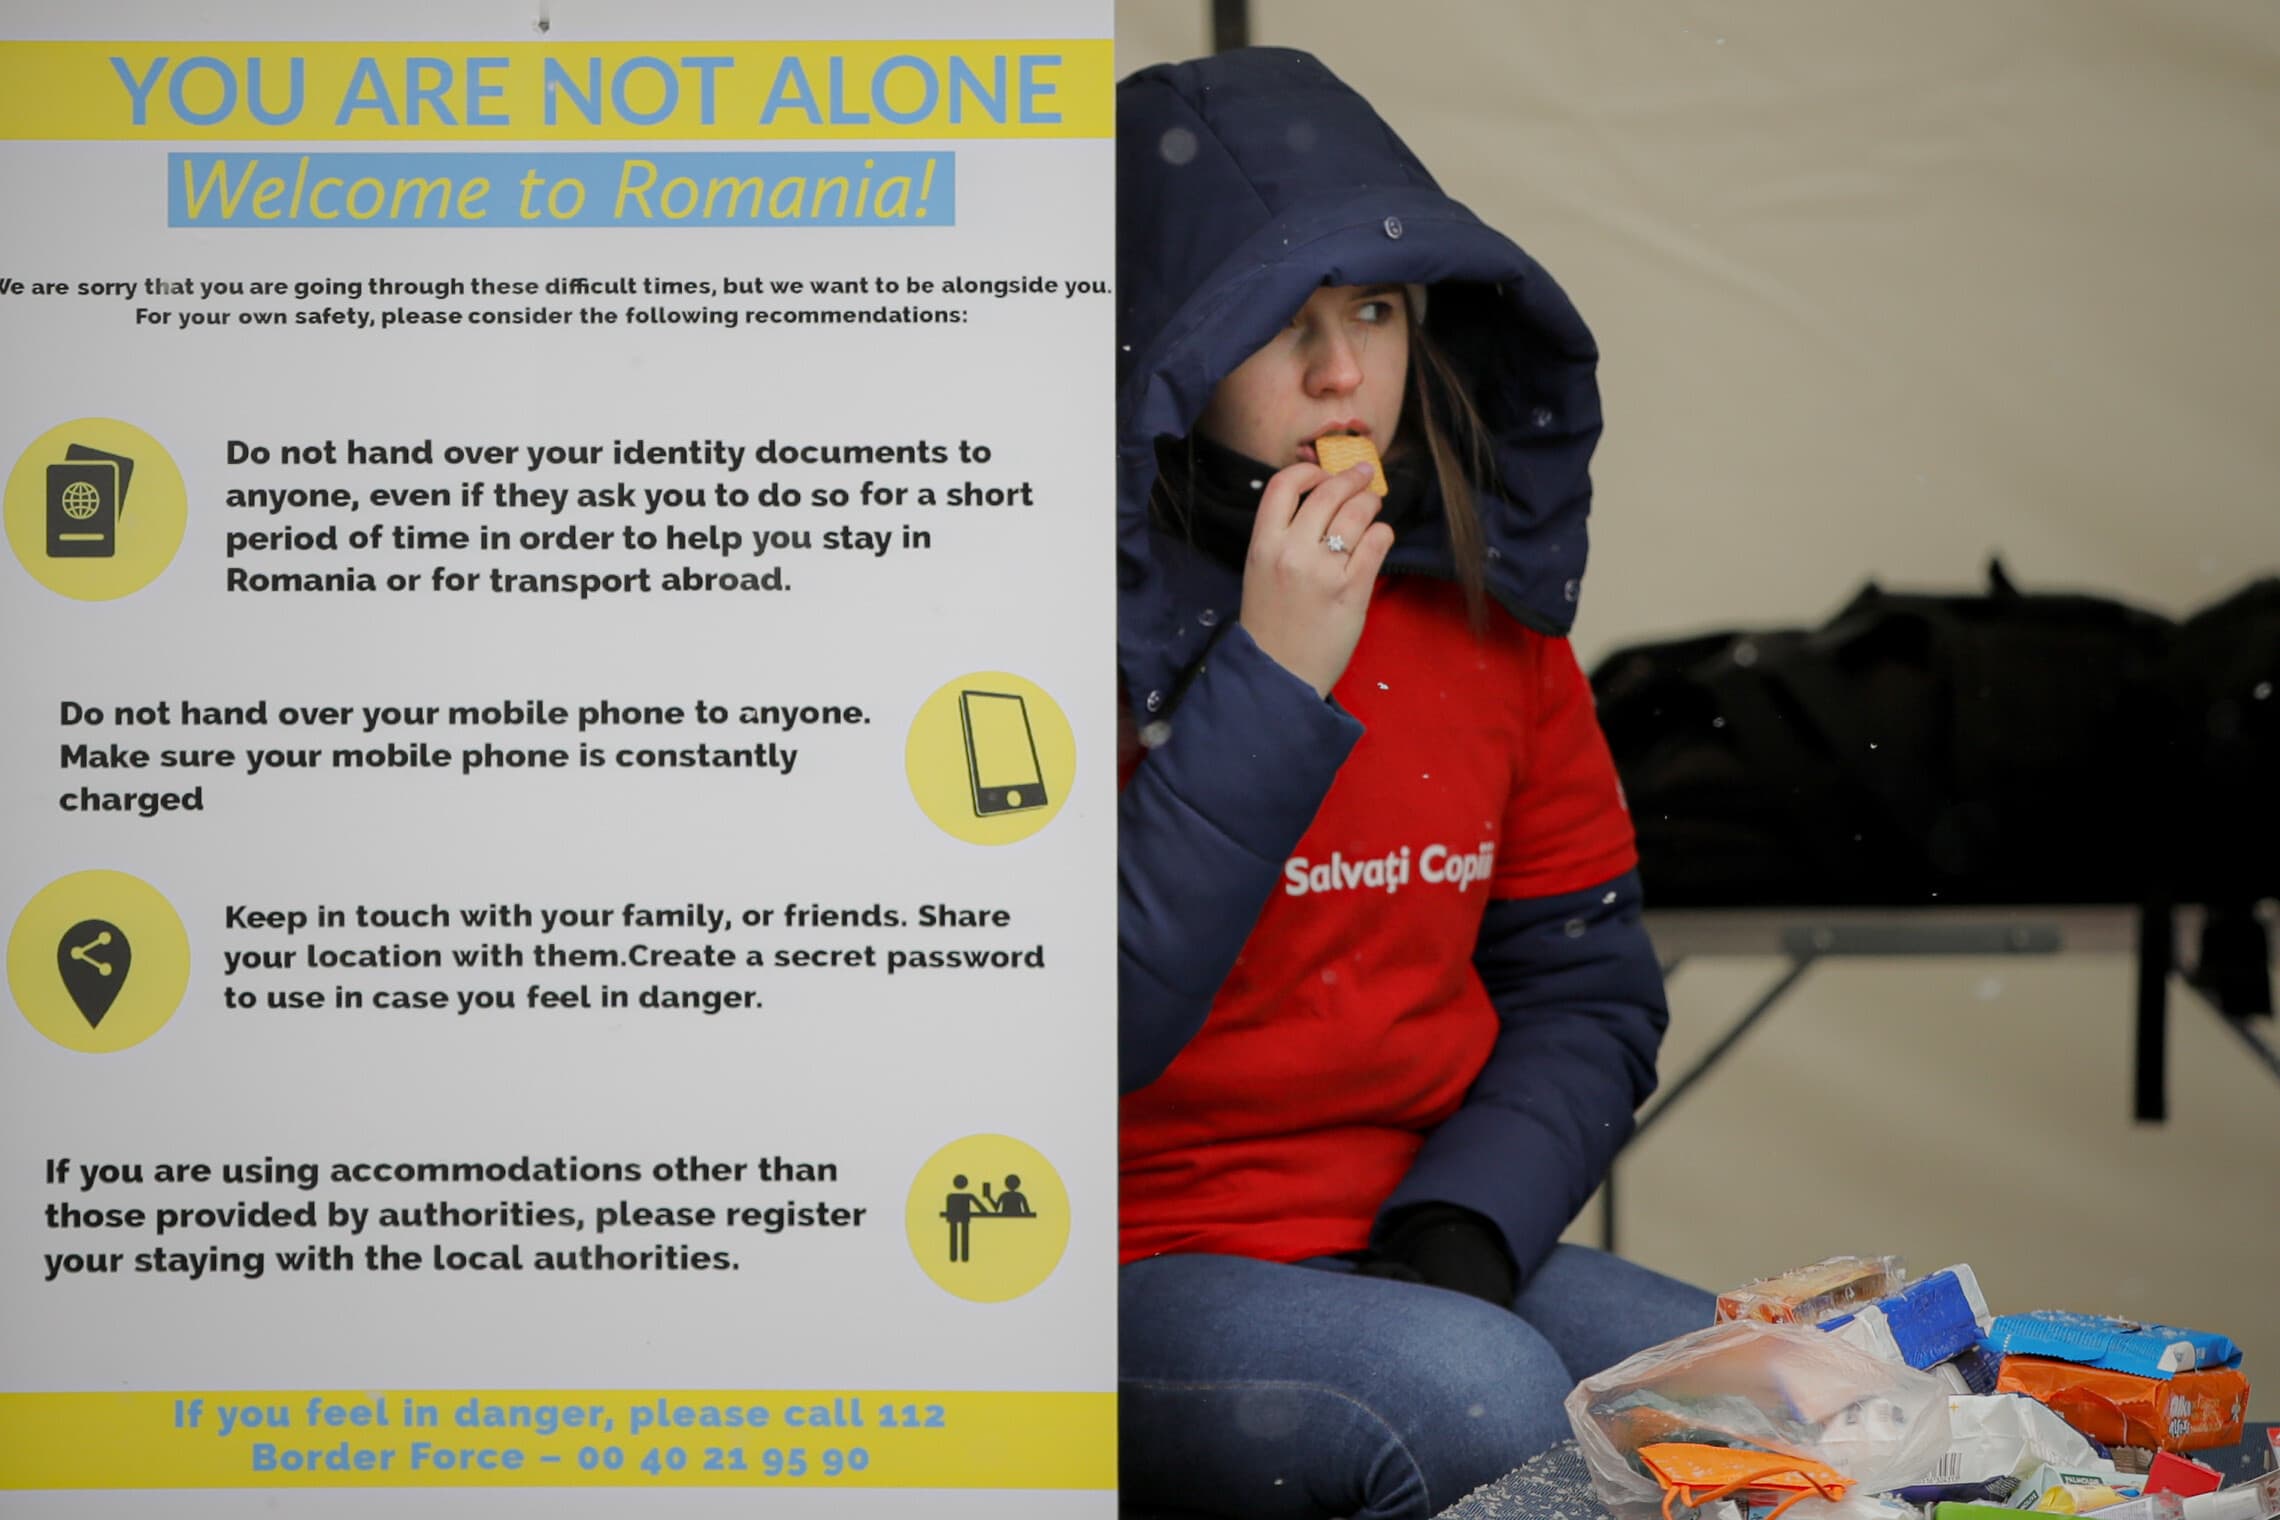 מתנדבת בארגון הבינלאומי &quot;להציל את הילדים&quot; יושבת ליד שלט עם הנחיות עבור הפליטים כיצד להישמר, בגבול רומניה-אוקראינה, 7 במרץ 2022 (צילום: AP Photo/Andreea Alexandru)